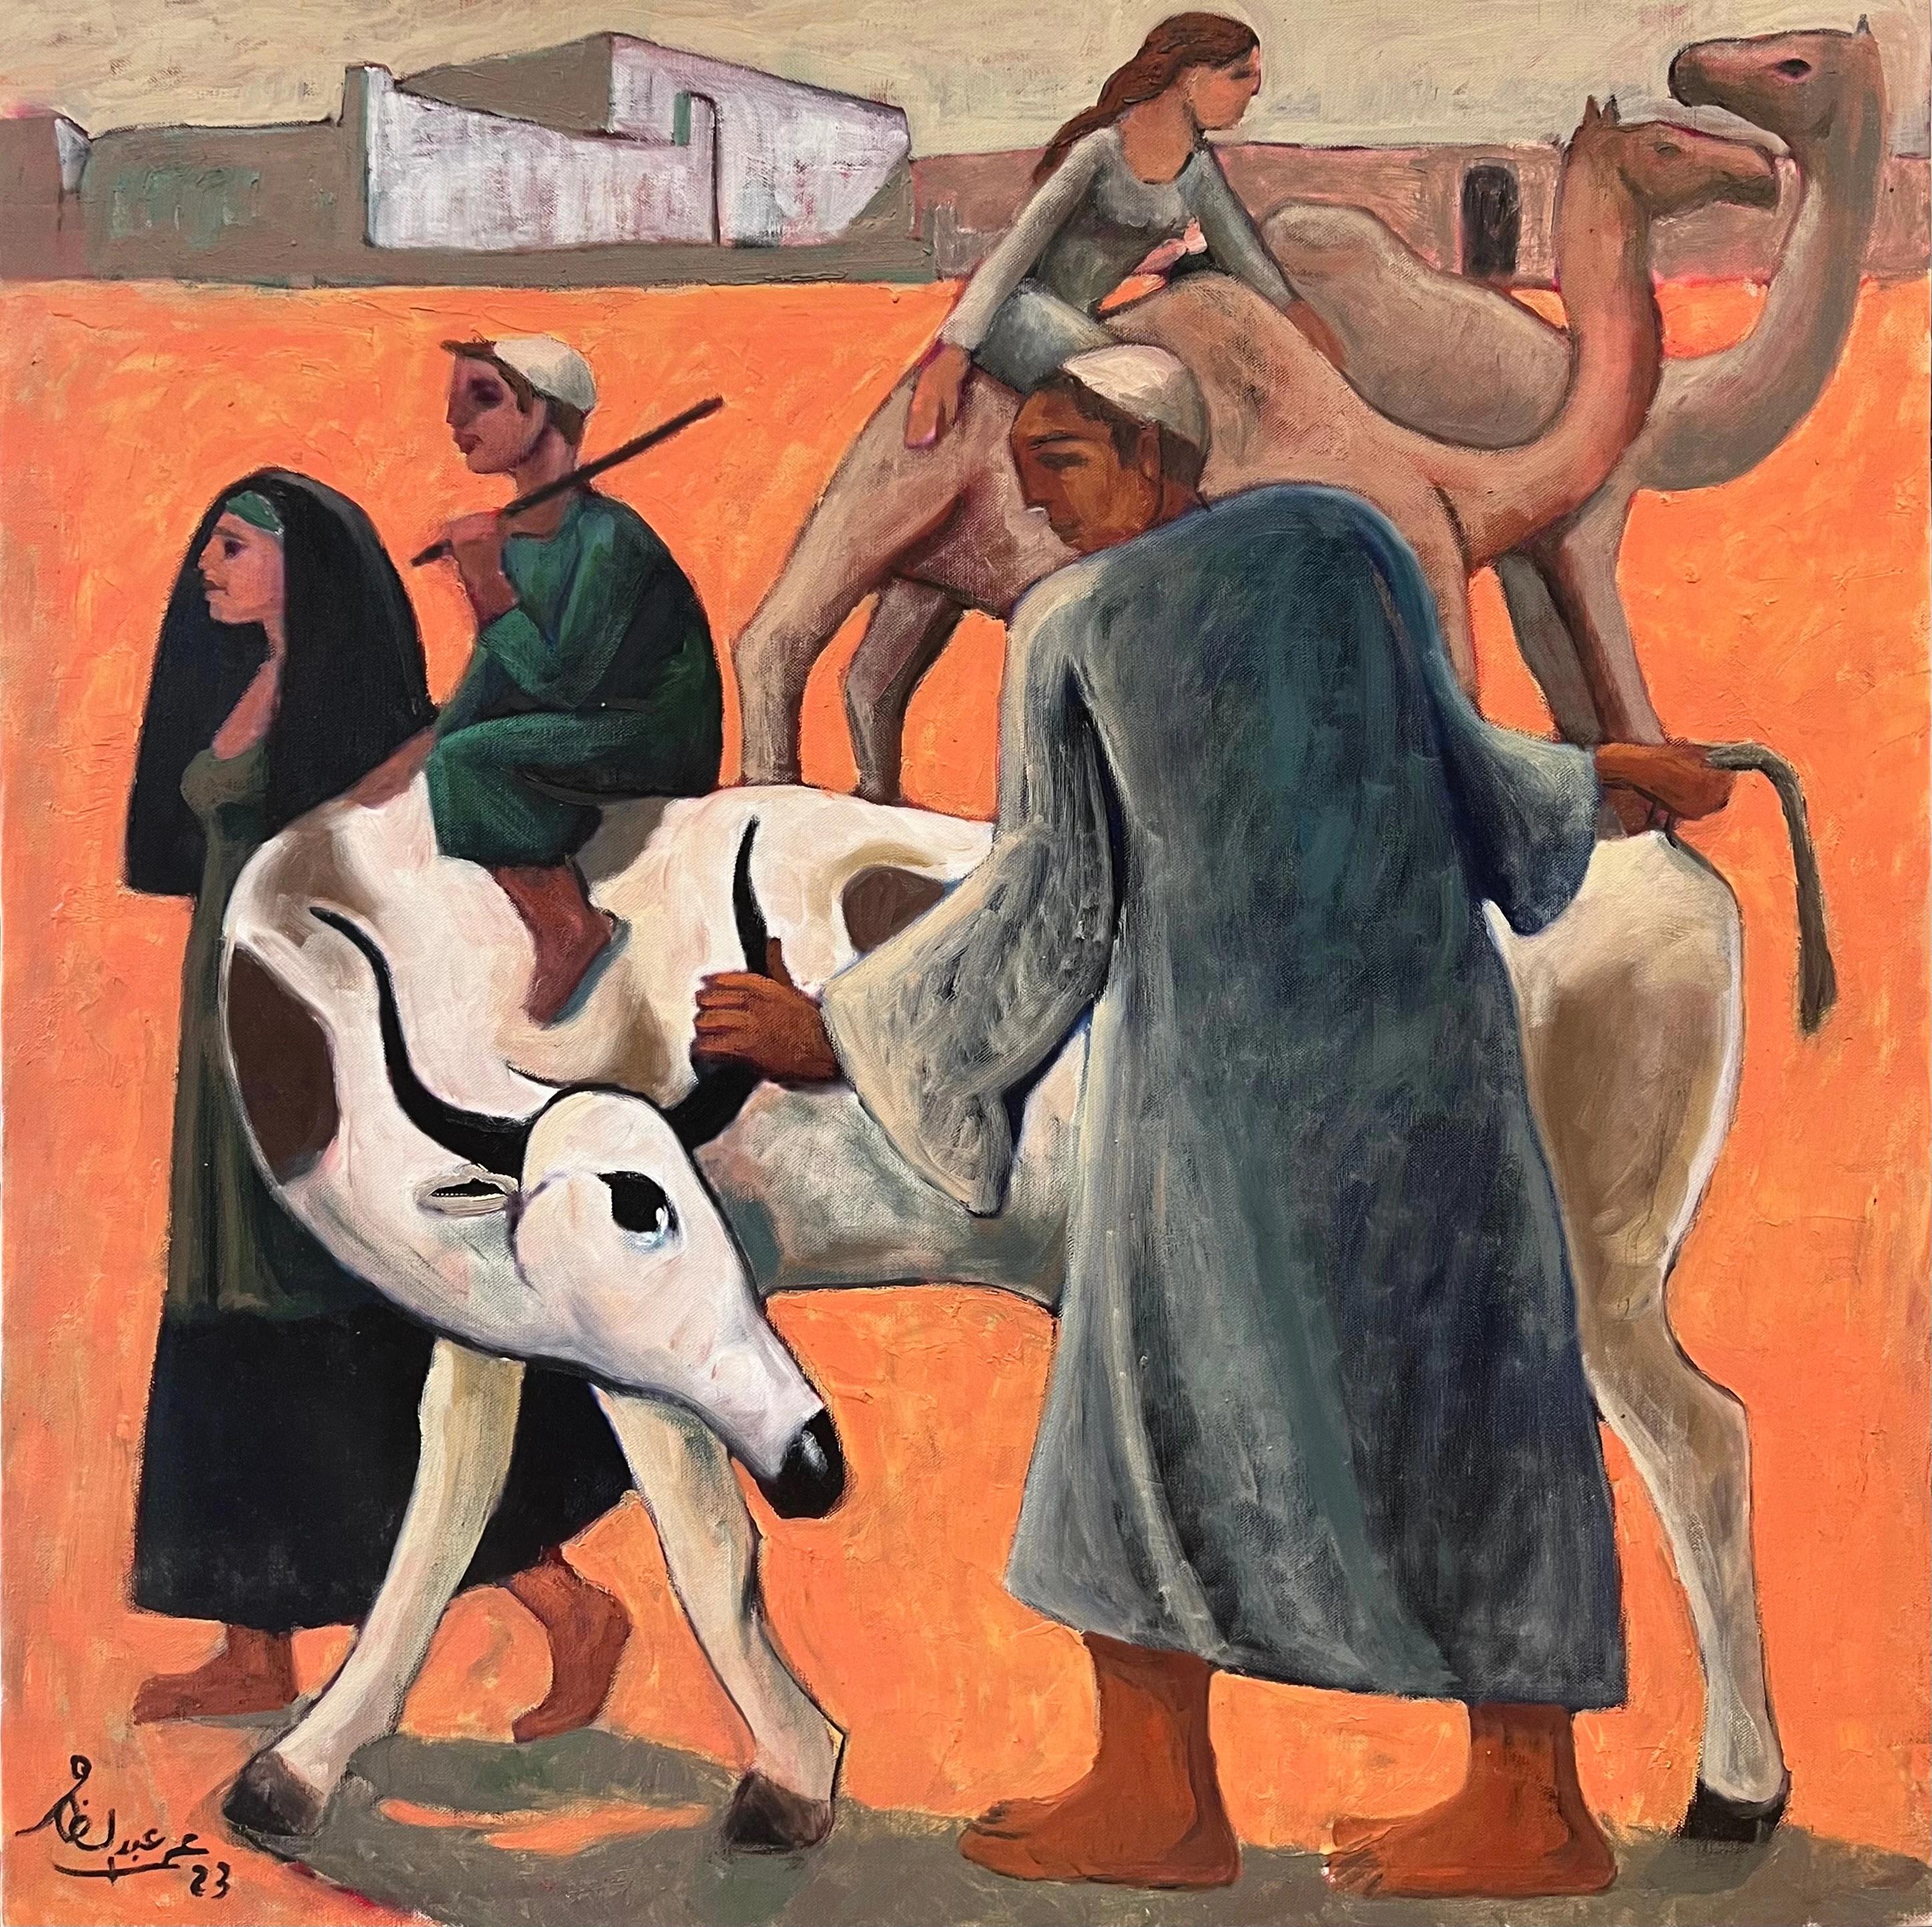 Peinture à l'huile "Taurus" 29" x 29" pouces par Omar Abdel Zaher

Abdel Zaher est diplômé de l'Academy of Fine Arts d'Helwan. Il peint depuis trois décennies et a notamment participé à diverses expositions collectives, dont le Salon El Shabab